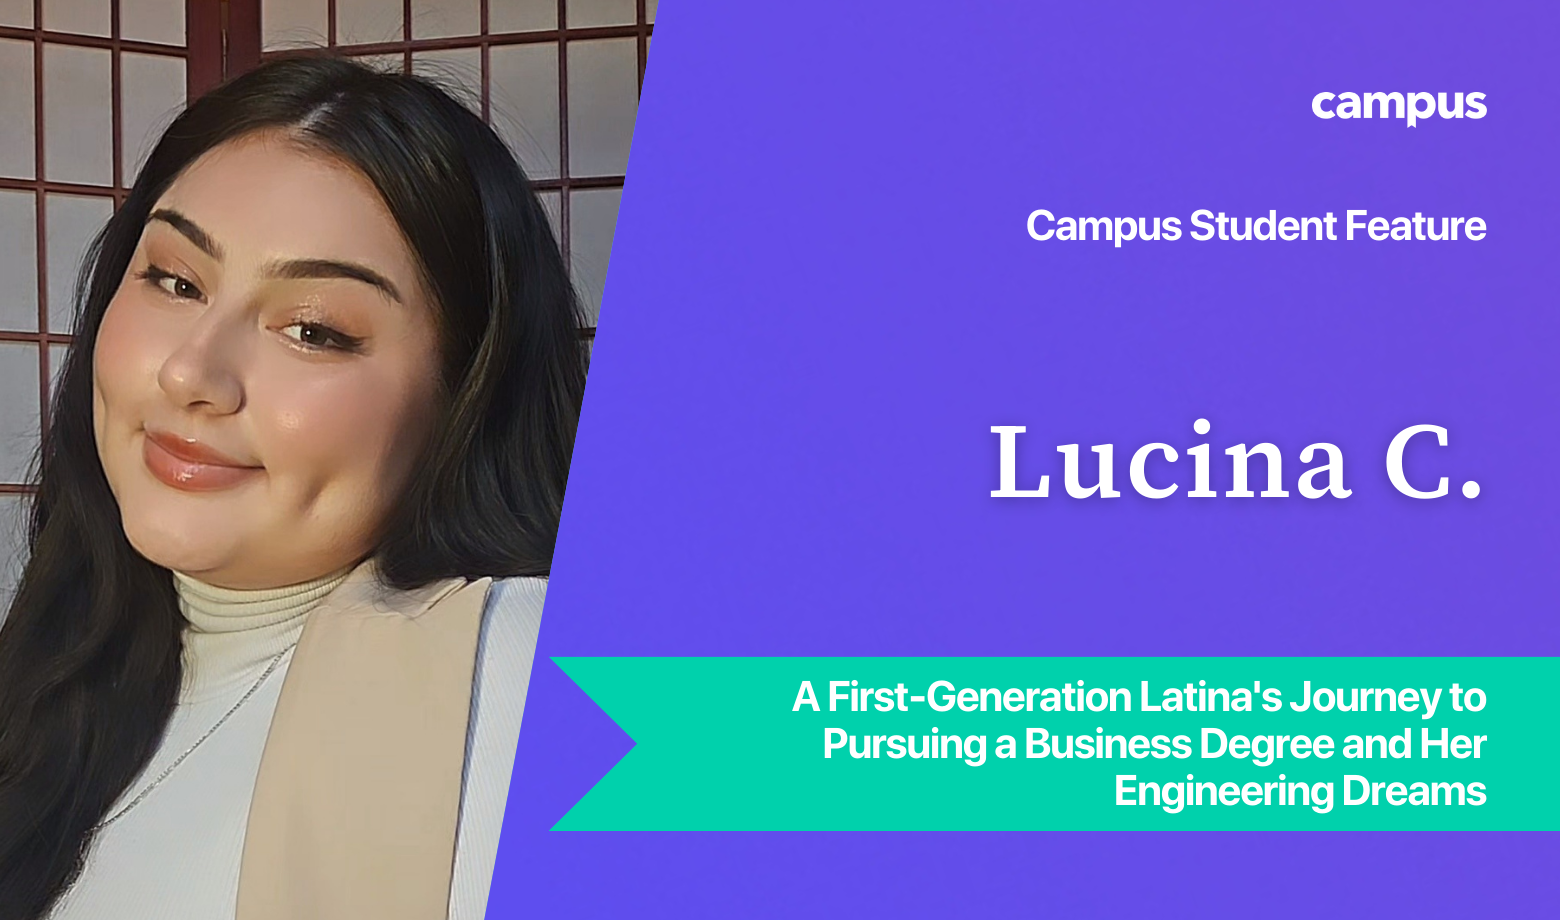 Campus Student Feature: Lucina C.